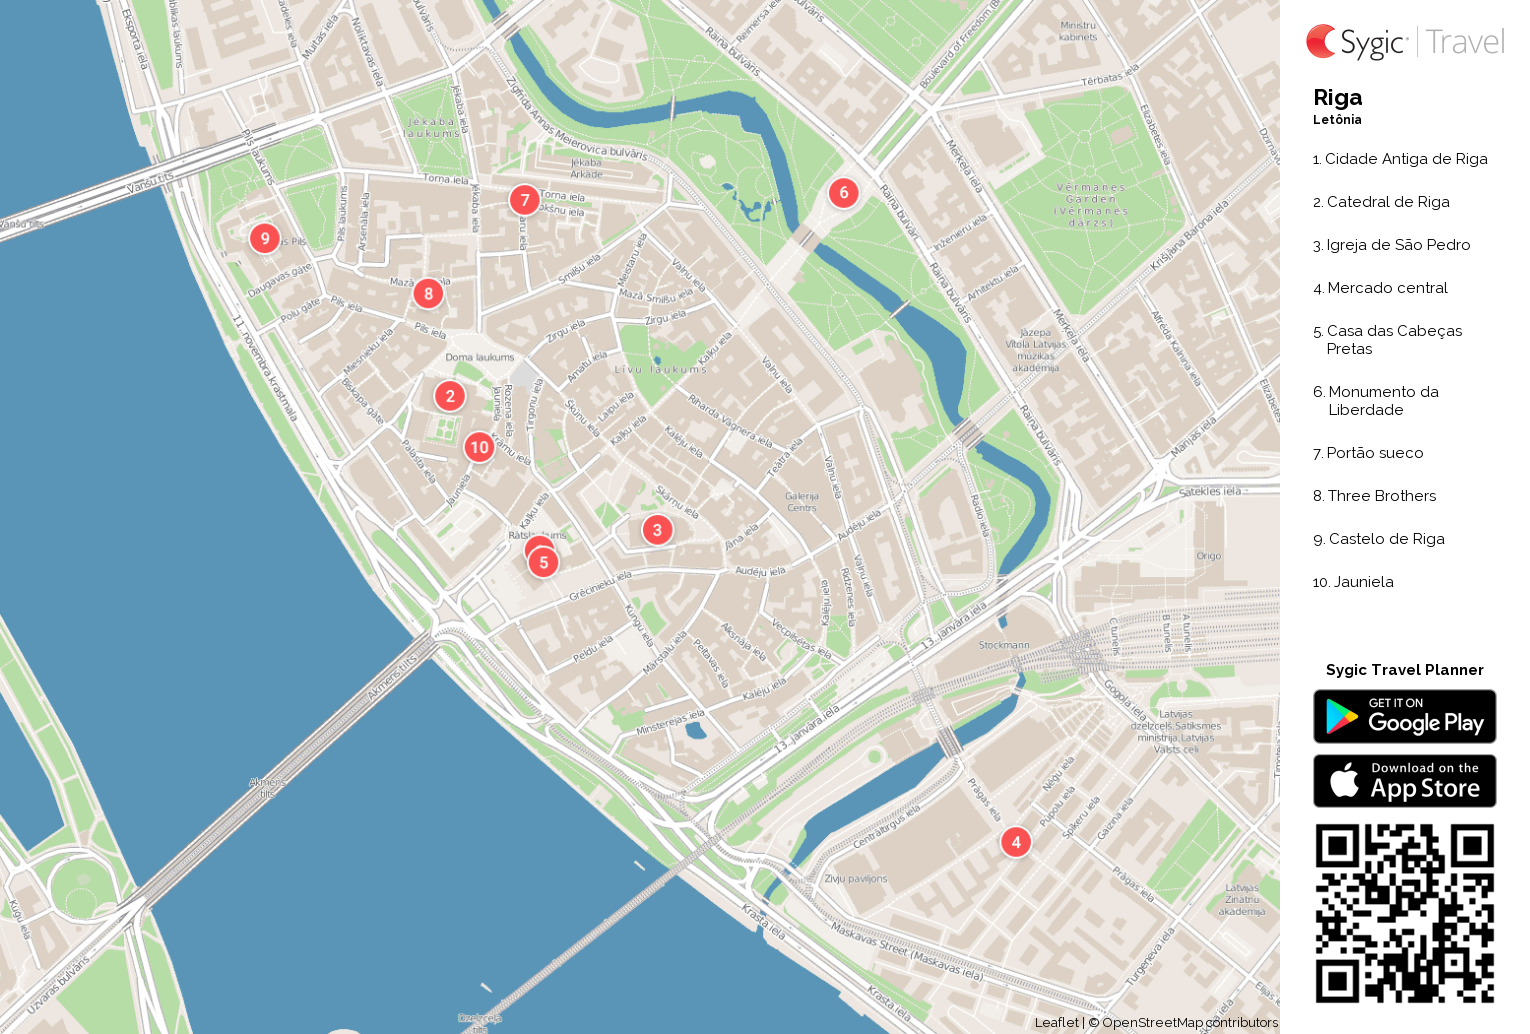 riga-mapa-turistico-em-pdf